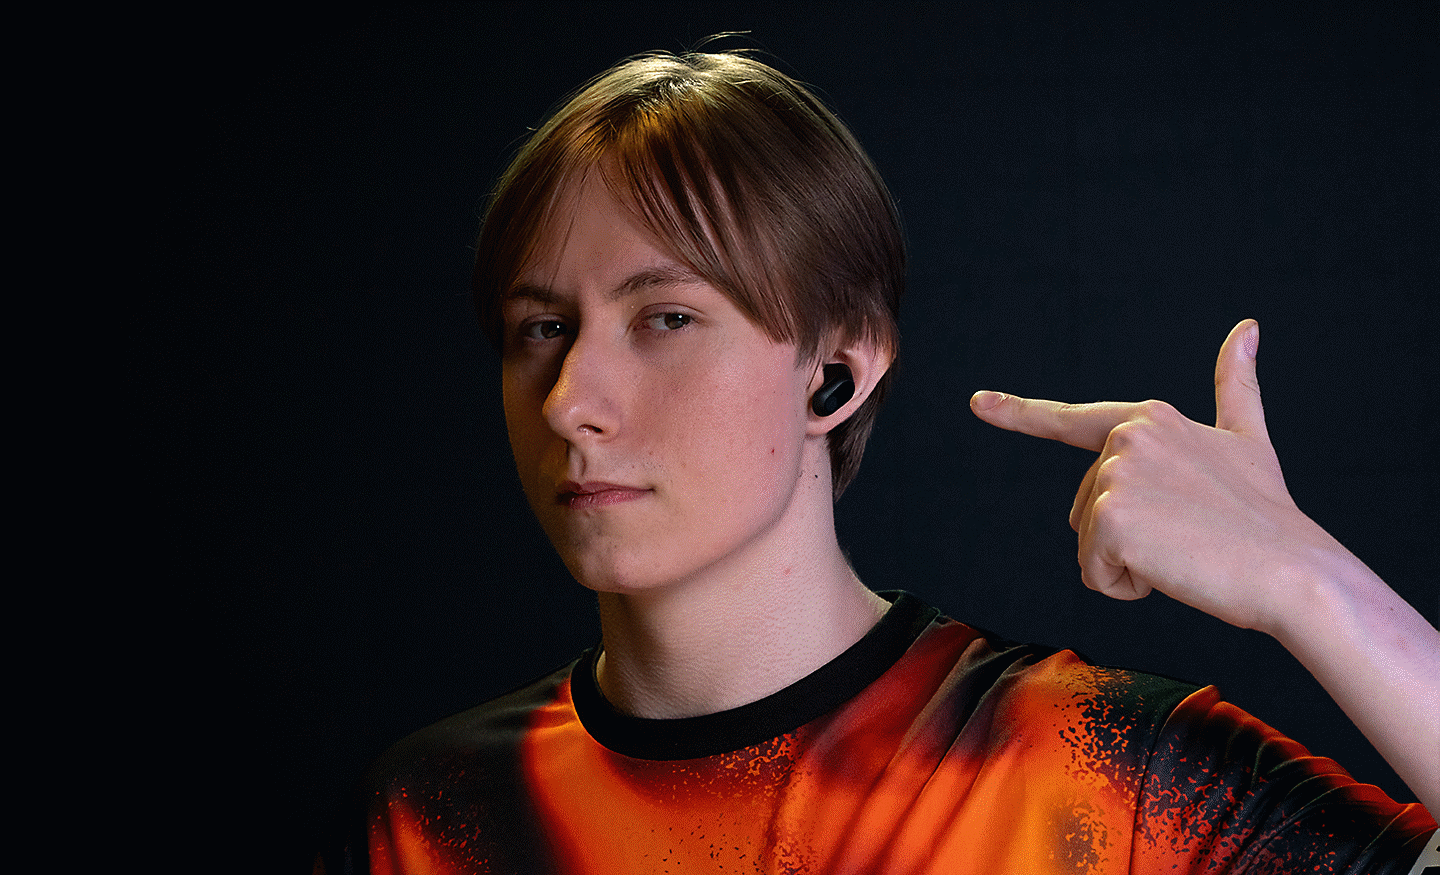 Profilna slika Chronicla, ki z roko kaže na črne slušalke INZONE Buds v svojih ušesih